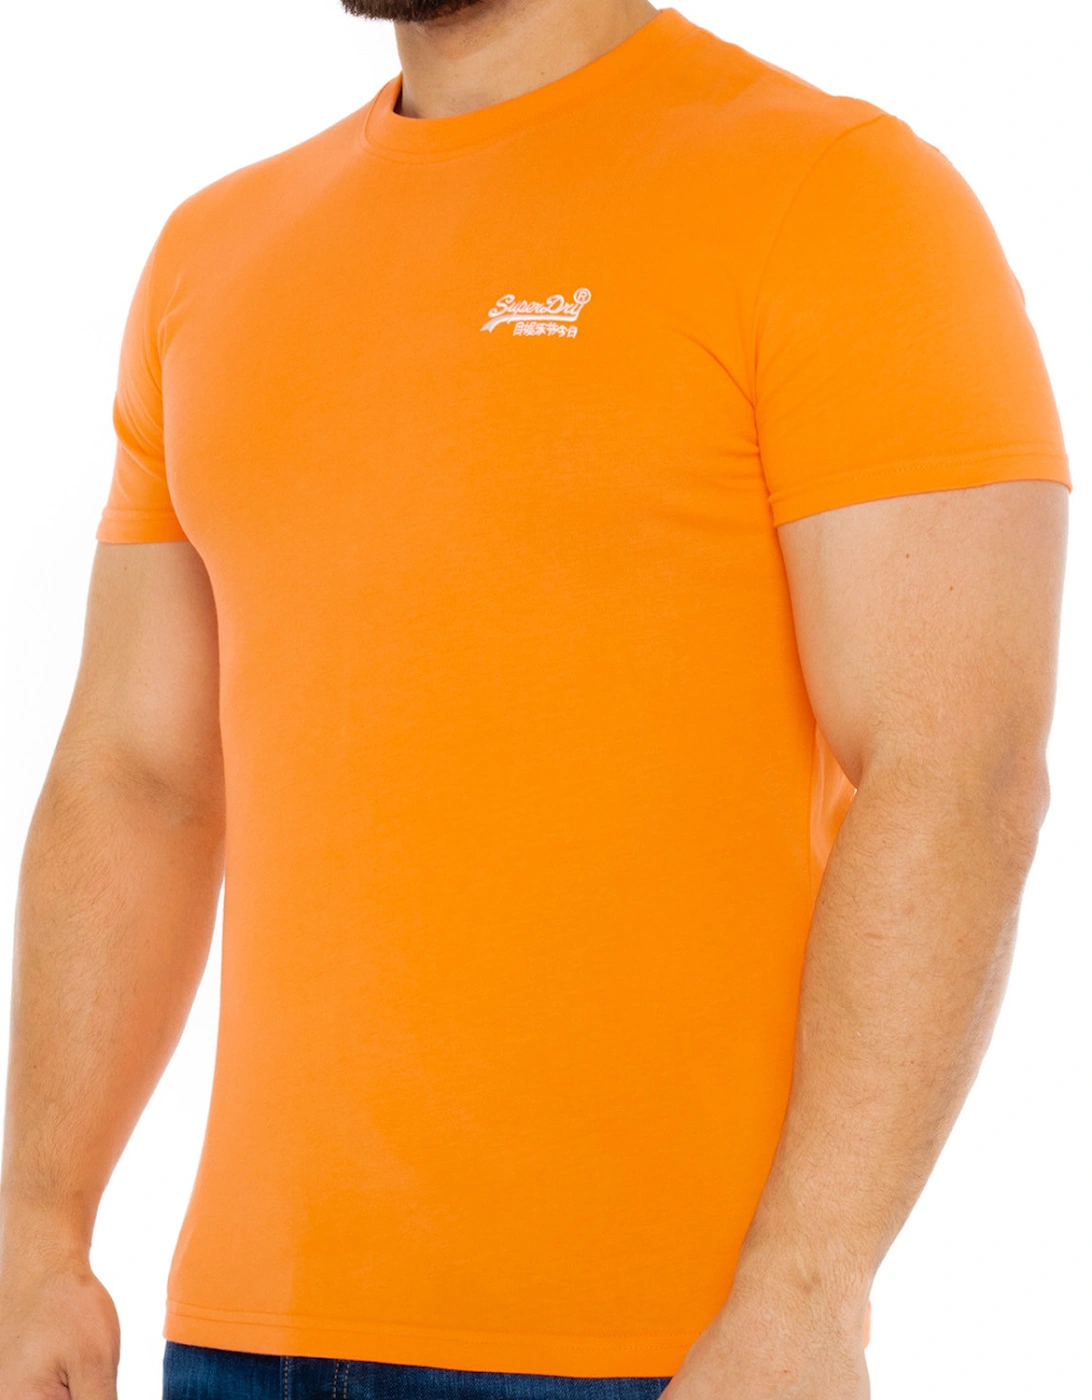 Mens Solid Vintage Logo T-Shirt (Orange)